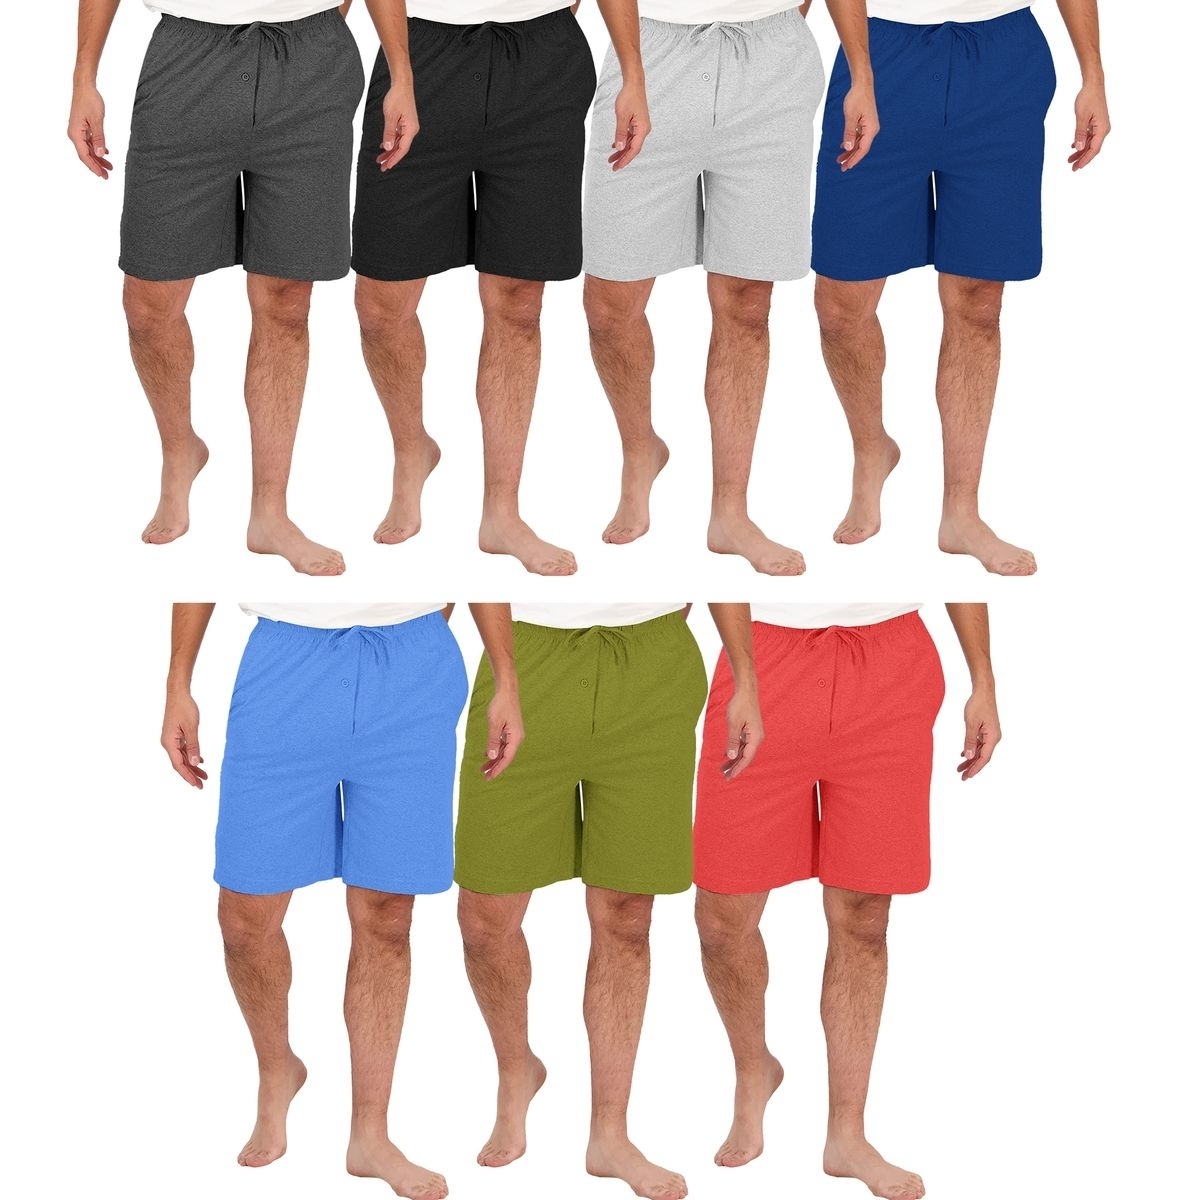 Men's Ultra-Soft Jersey Knit Lounge Sleep Pajama Shorts - Charcoal, Small